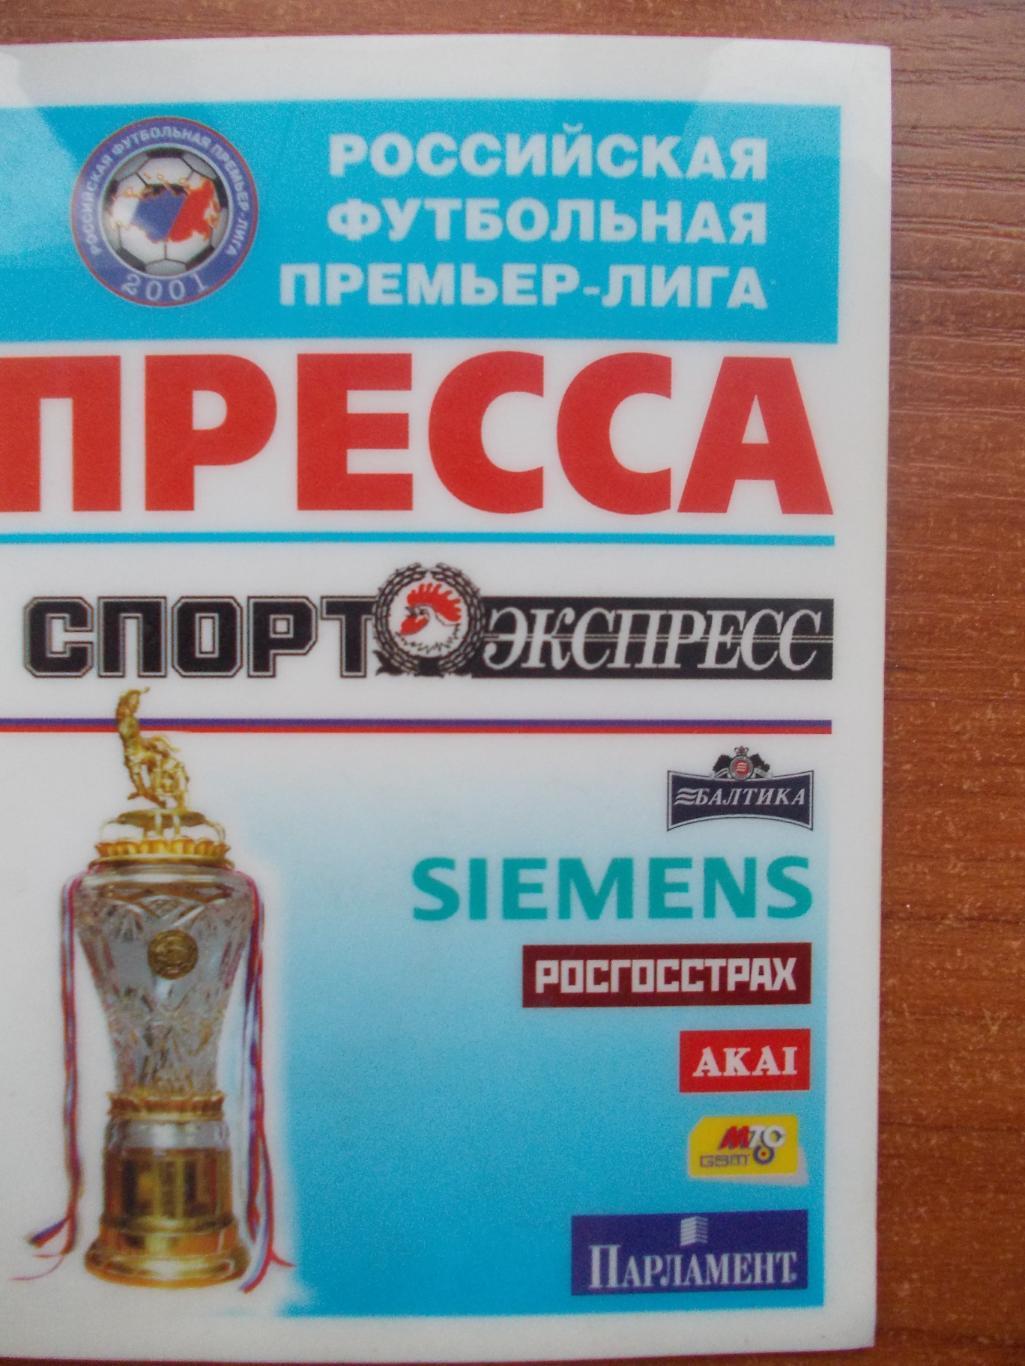 Аккредитация на сезон РФПЛ 2005 года